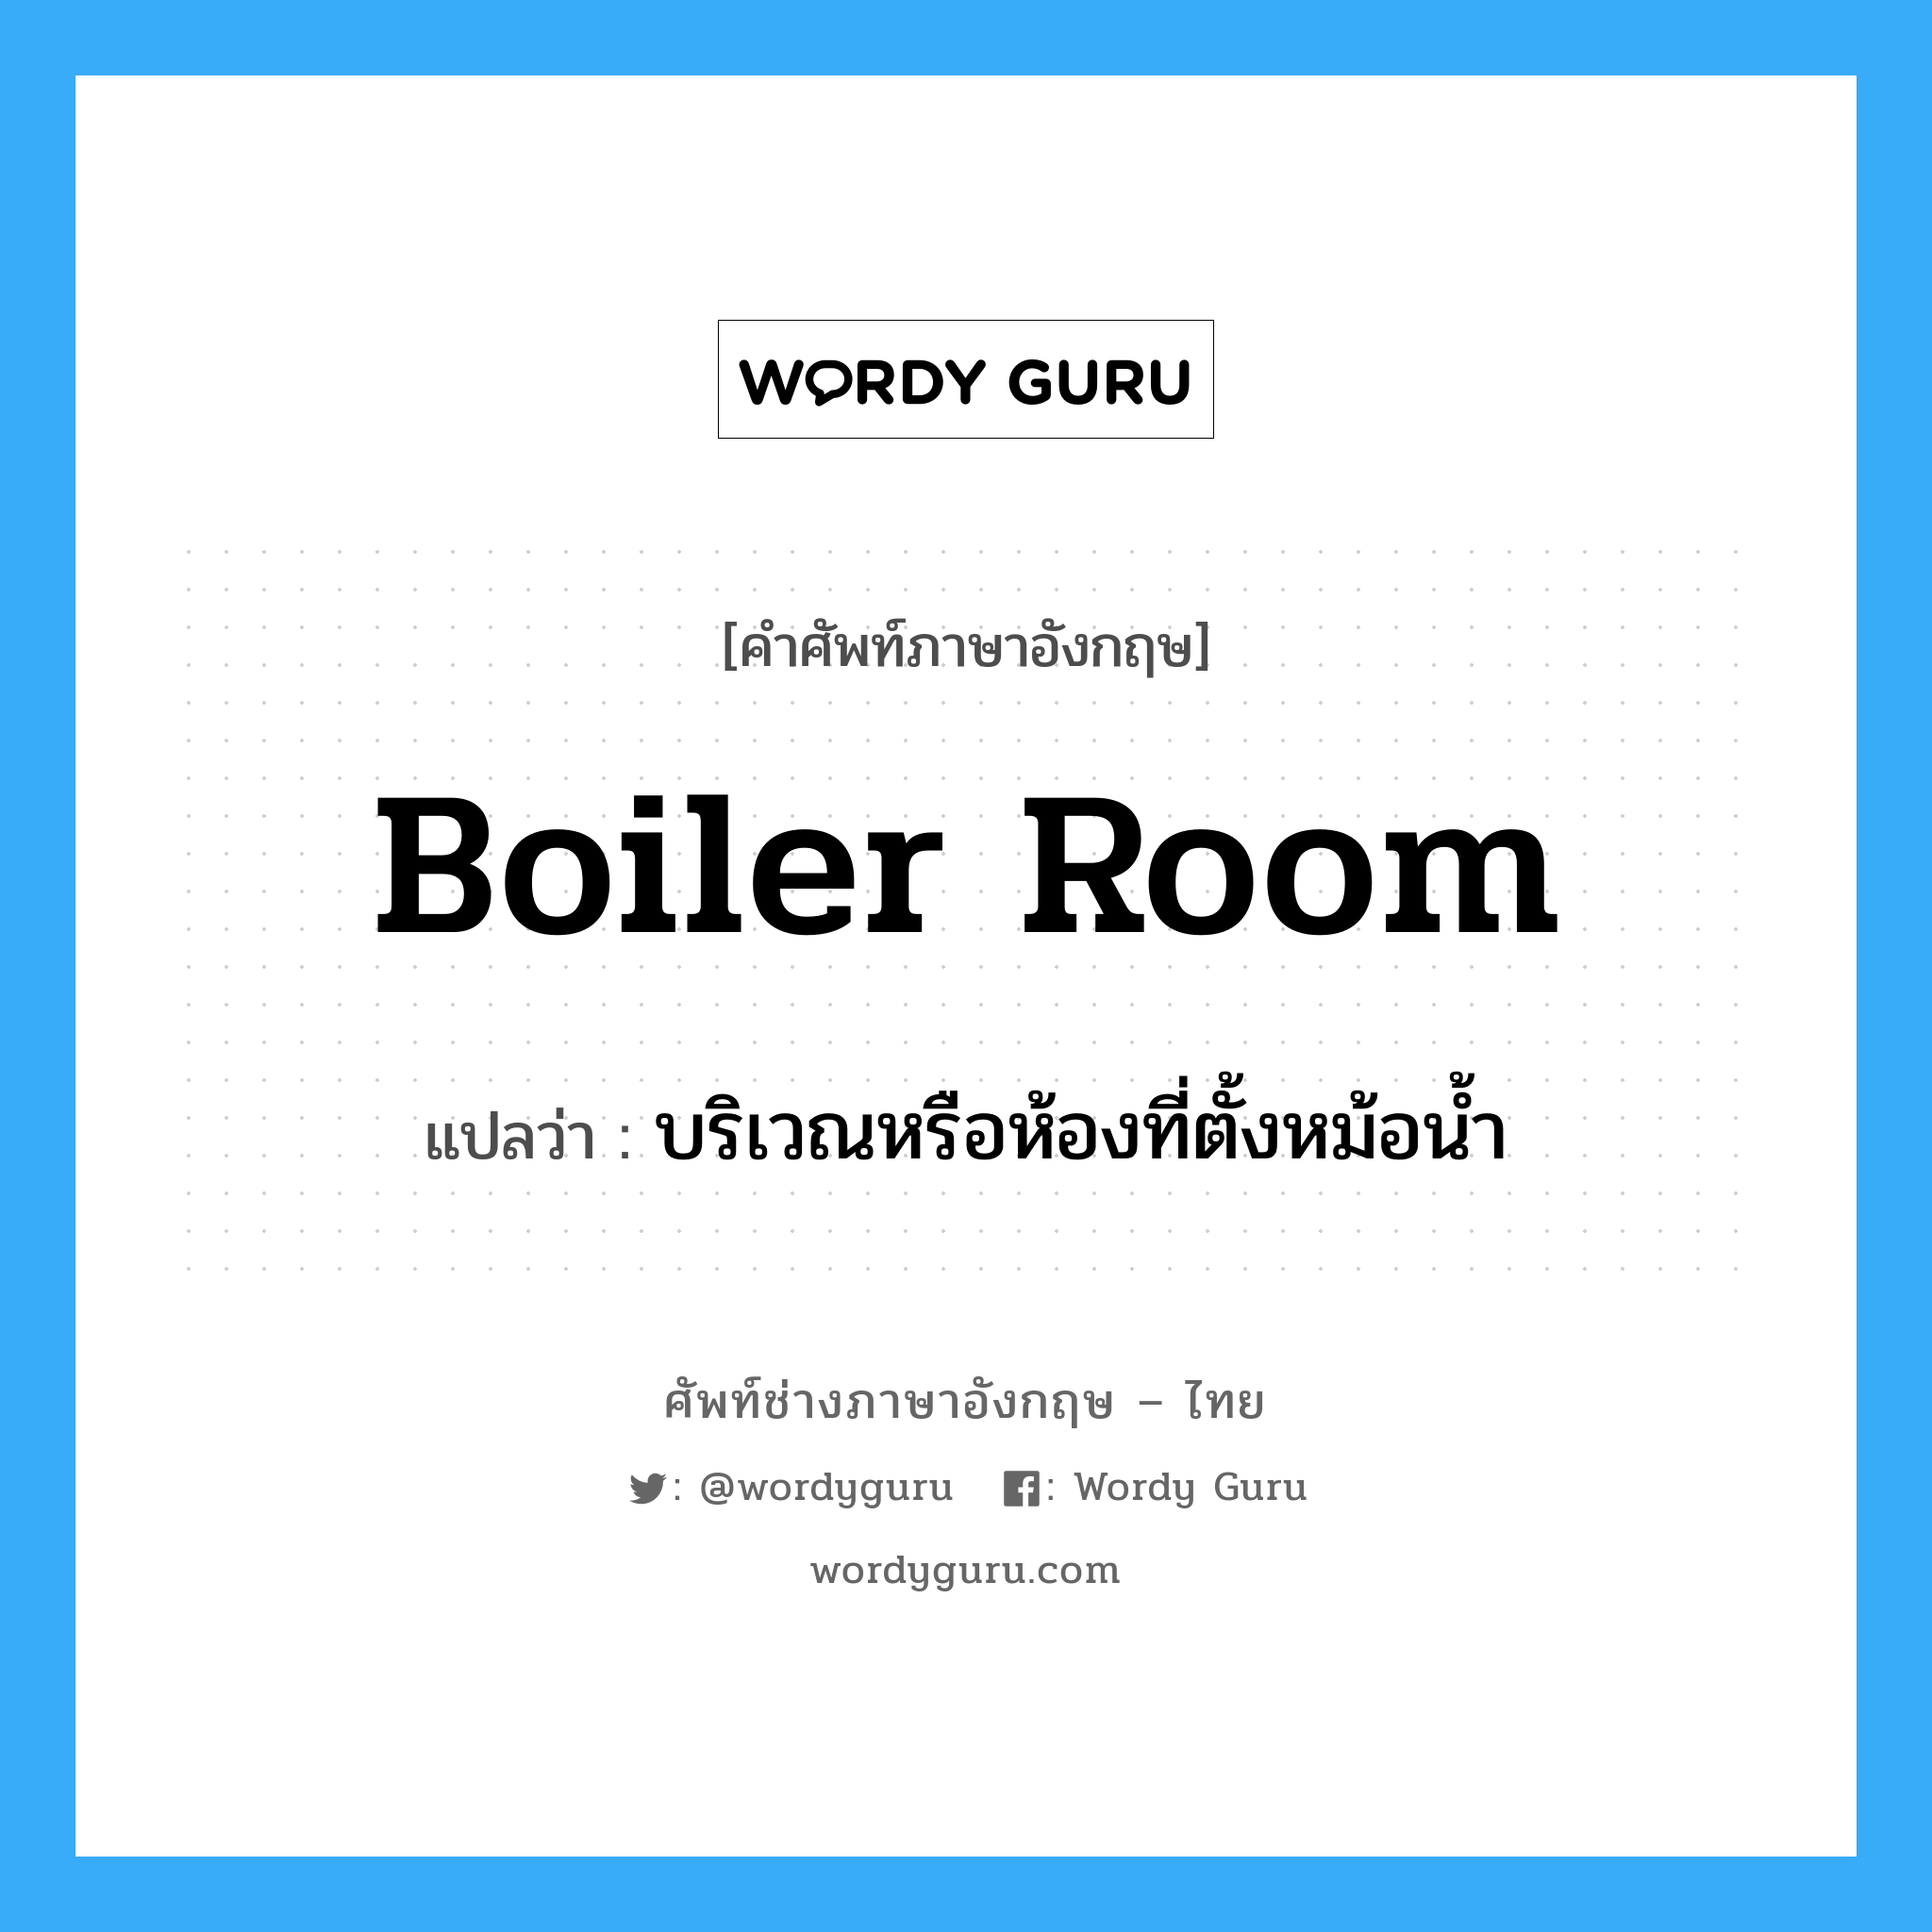 บริเวณหรือห้องที่ตั้งหม้อน้ำ ภาษาอังกฤษ?, คำศัพท์ช่างภาษาอังกฤษ - ไทย บริเวณหรือห้องที่ตั้งหม้อน้ำ คำศัพท์ภาษาอังกฤษ บริเวณหรือห้องที่ตั้งหม้อน้ำ แปลว่า boiler room